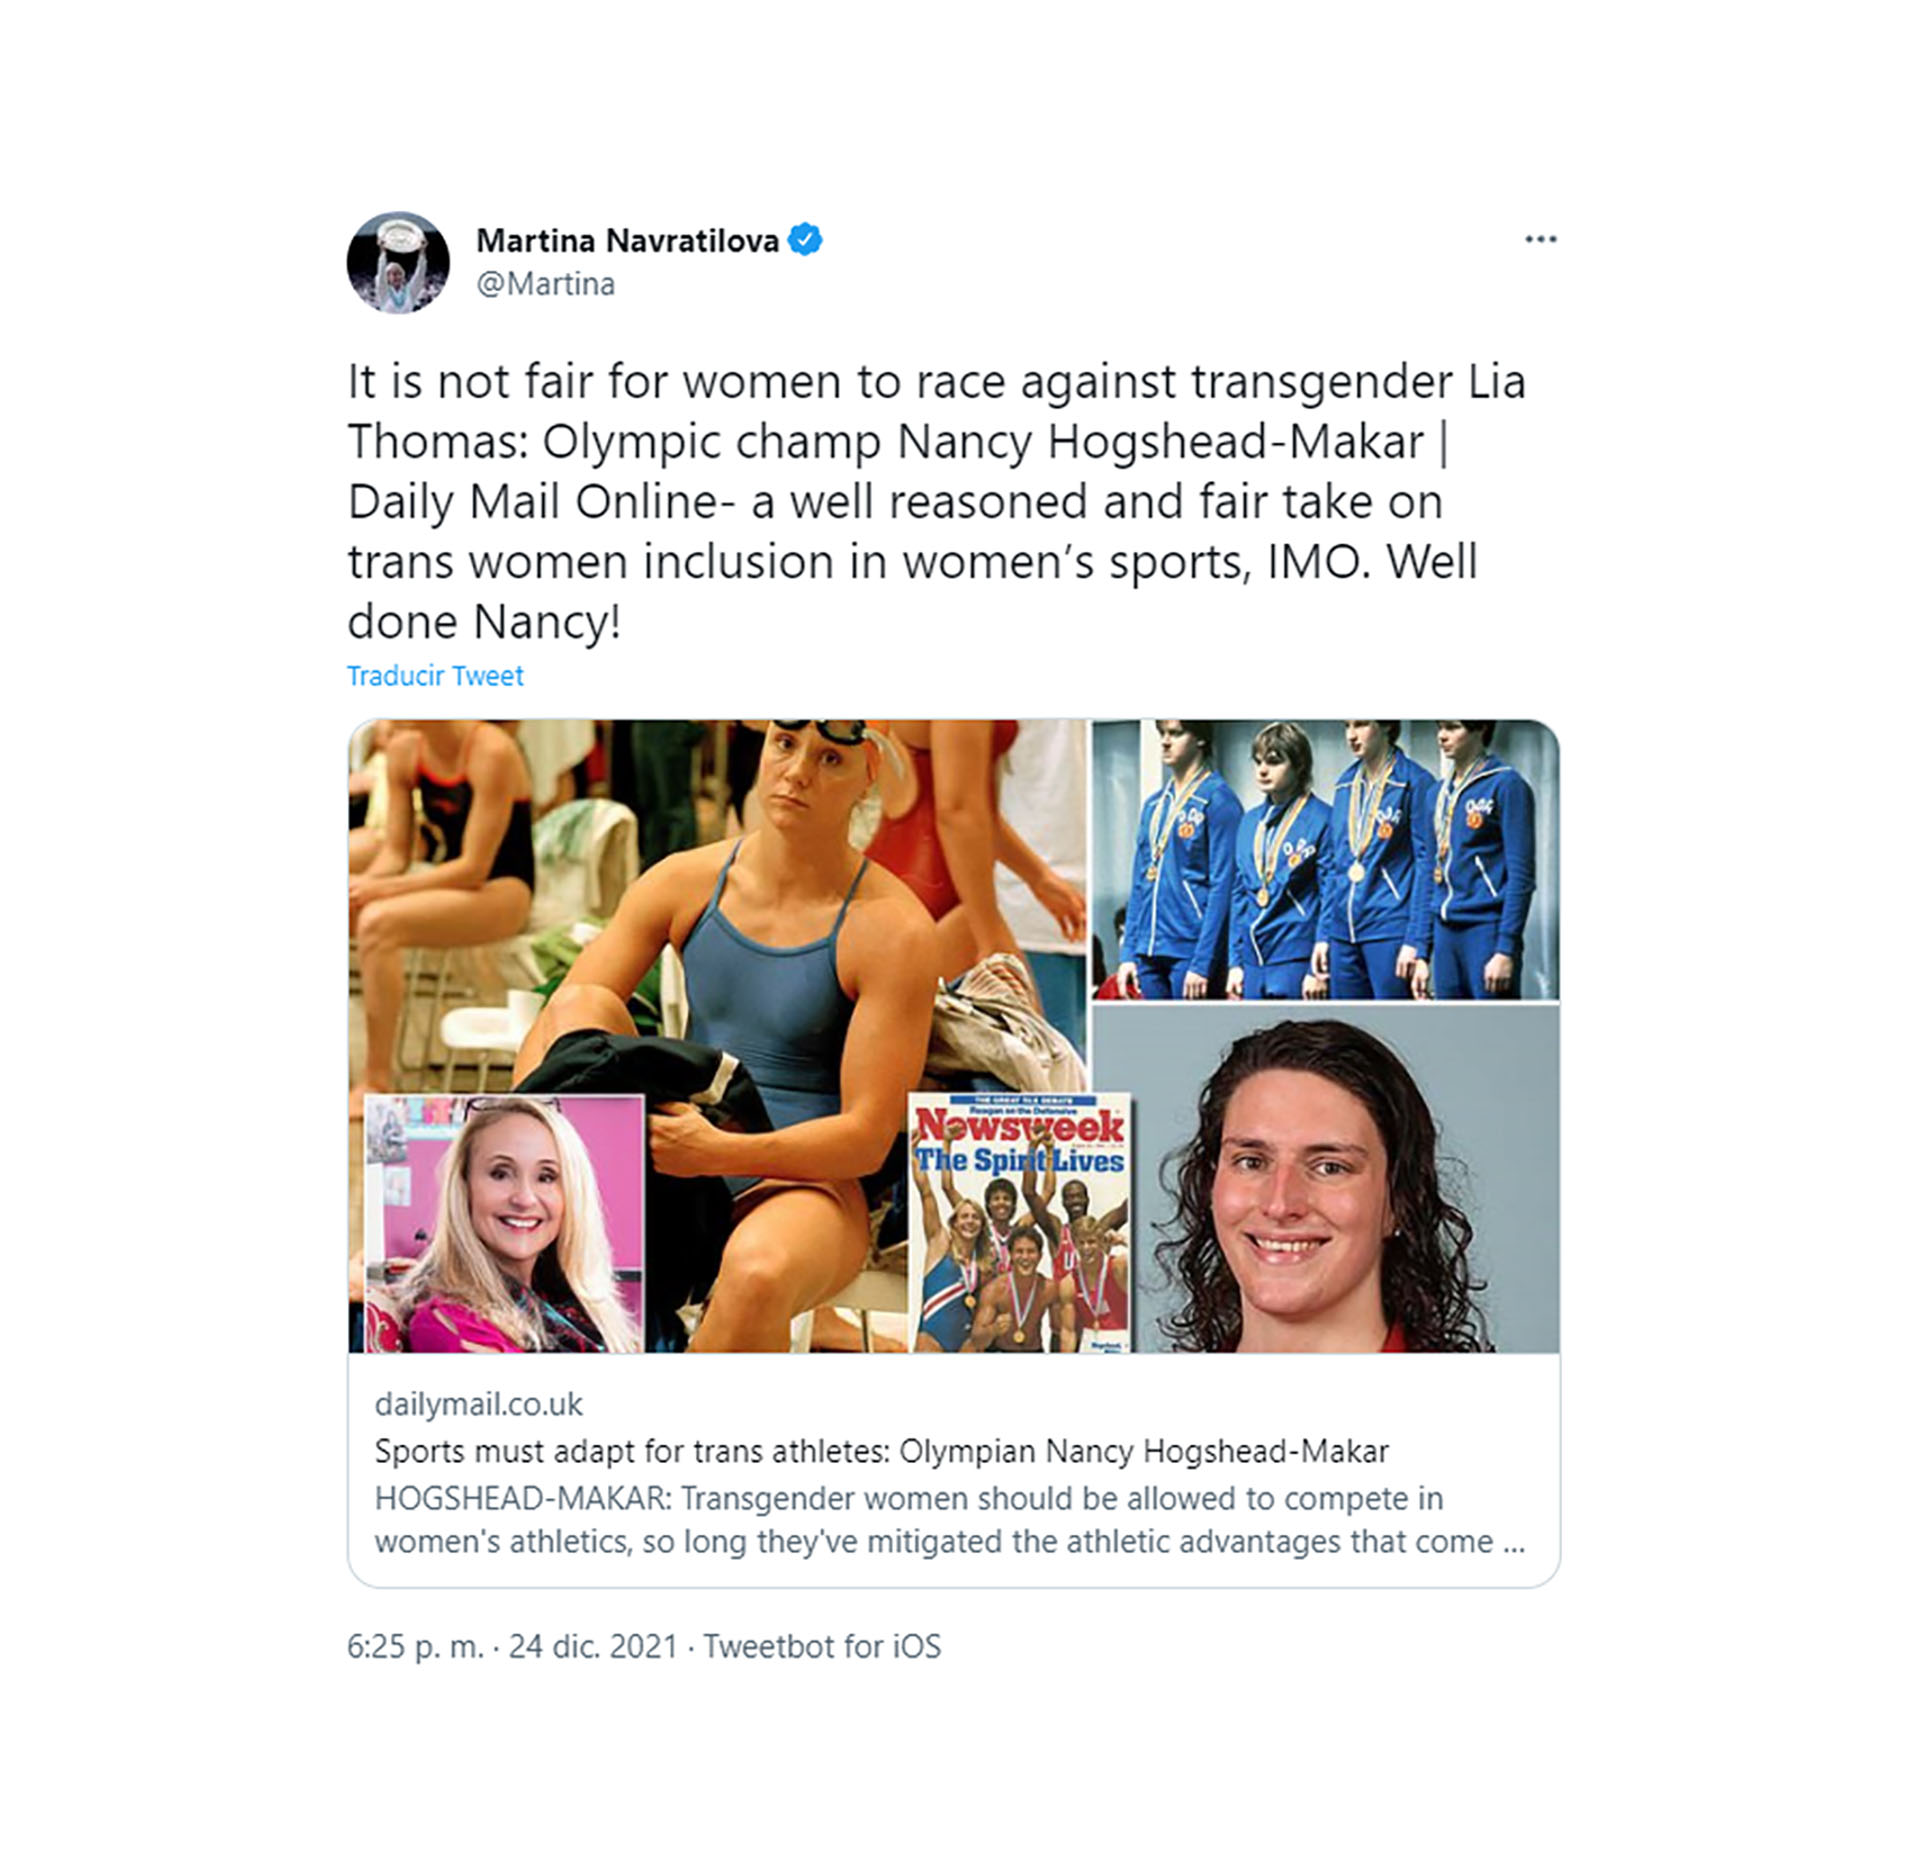 La ex tenista Martina Navrátilová citó un artículo firmado por la ex nadadora Nancy Lynn Hogshead, que criticó la inclusión de Thomas a la natación femenina